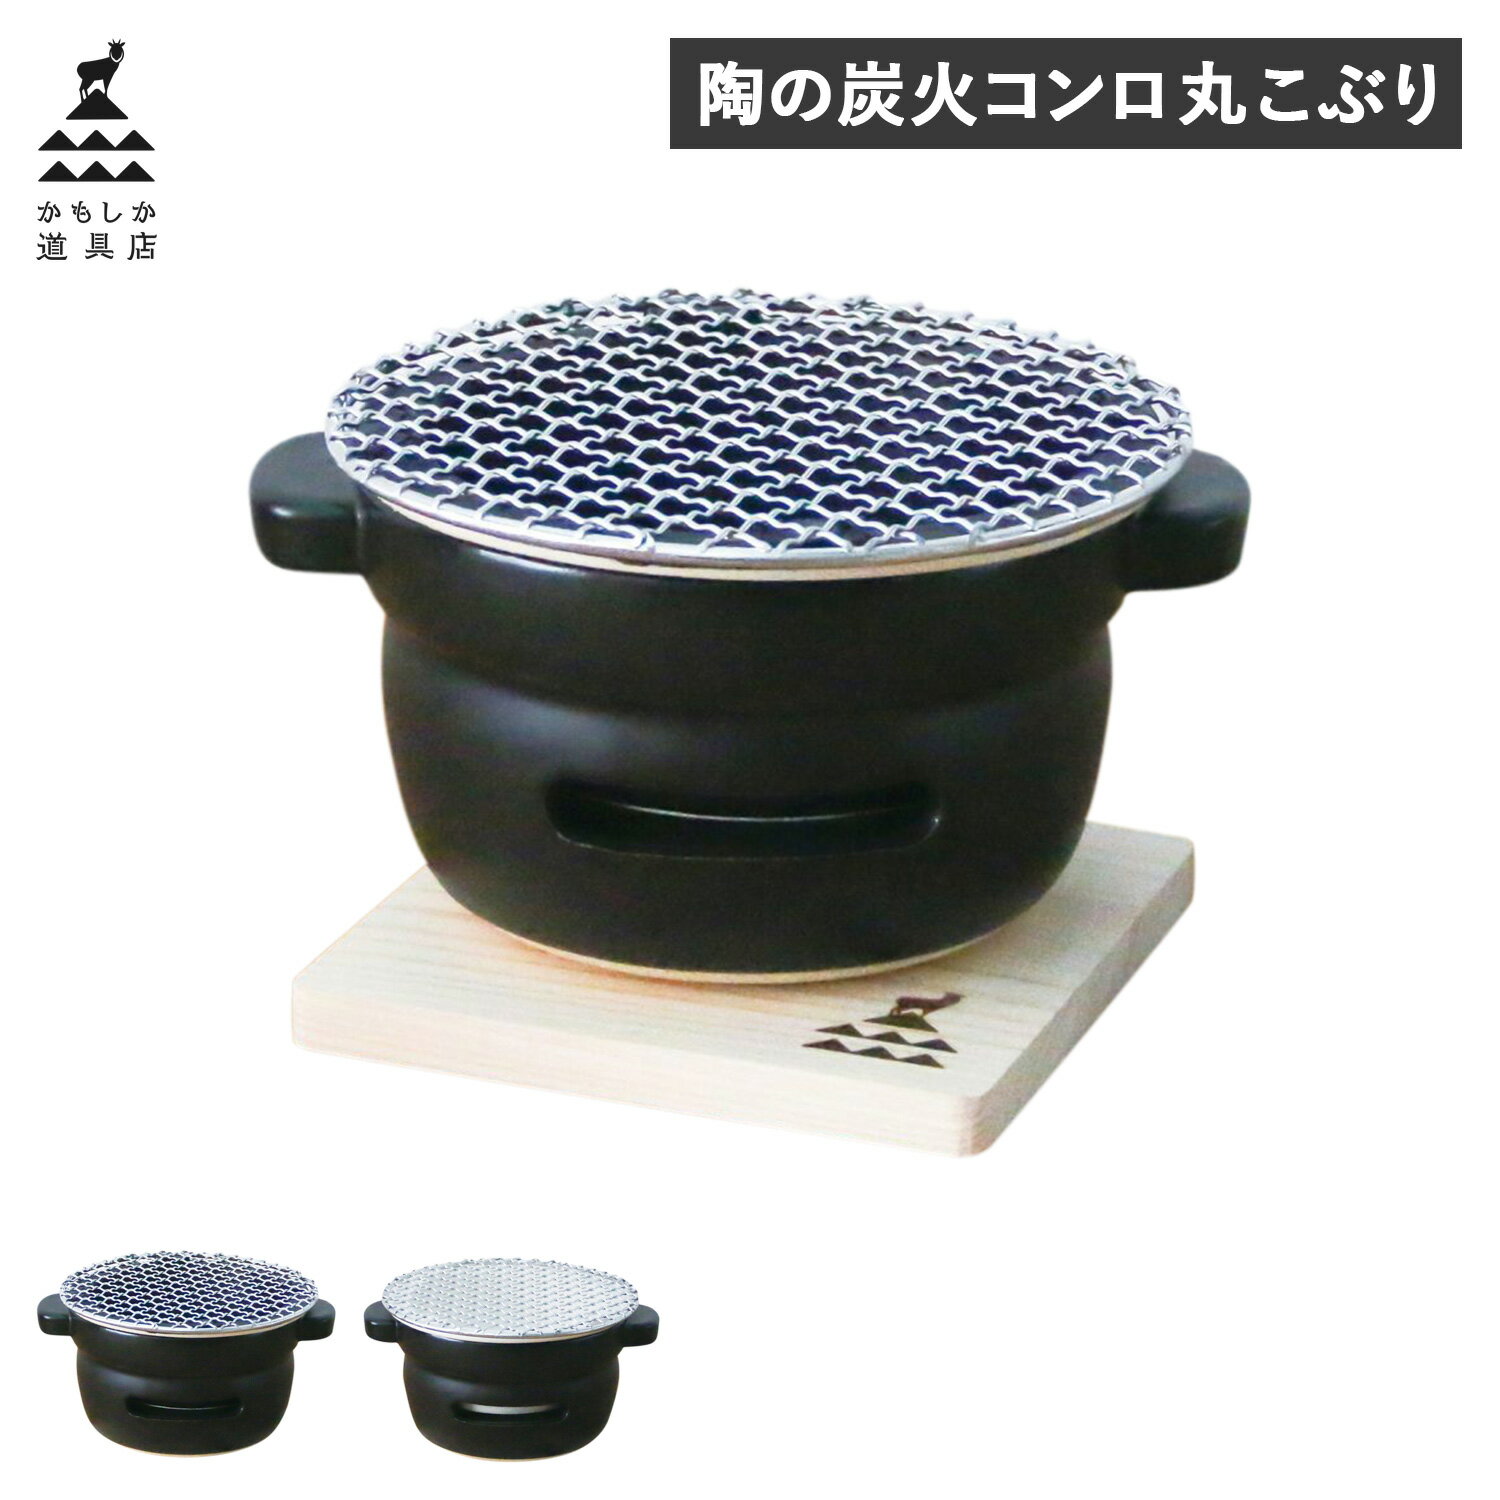 かもしか道具店 卓上コンロ 陶器 陶の炭火コンロ 丸 こぶり 小型 コンパクト 日本製